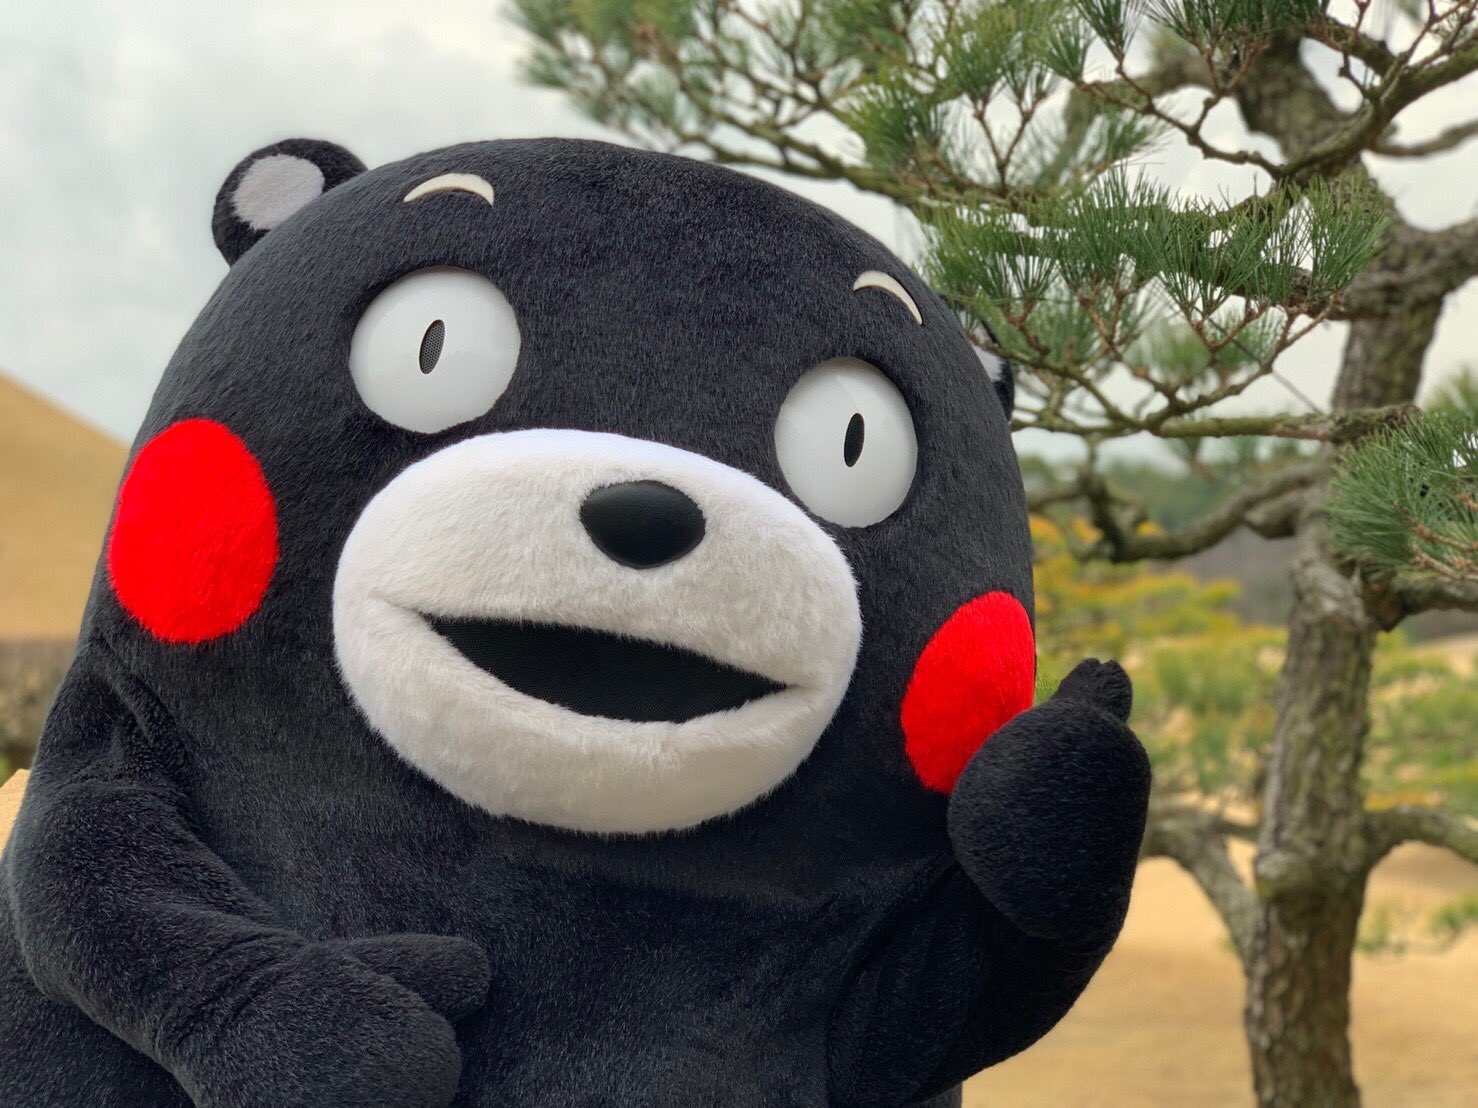 (观察者网讯)熊本熊要换官方中文名了,以后官方中文